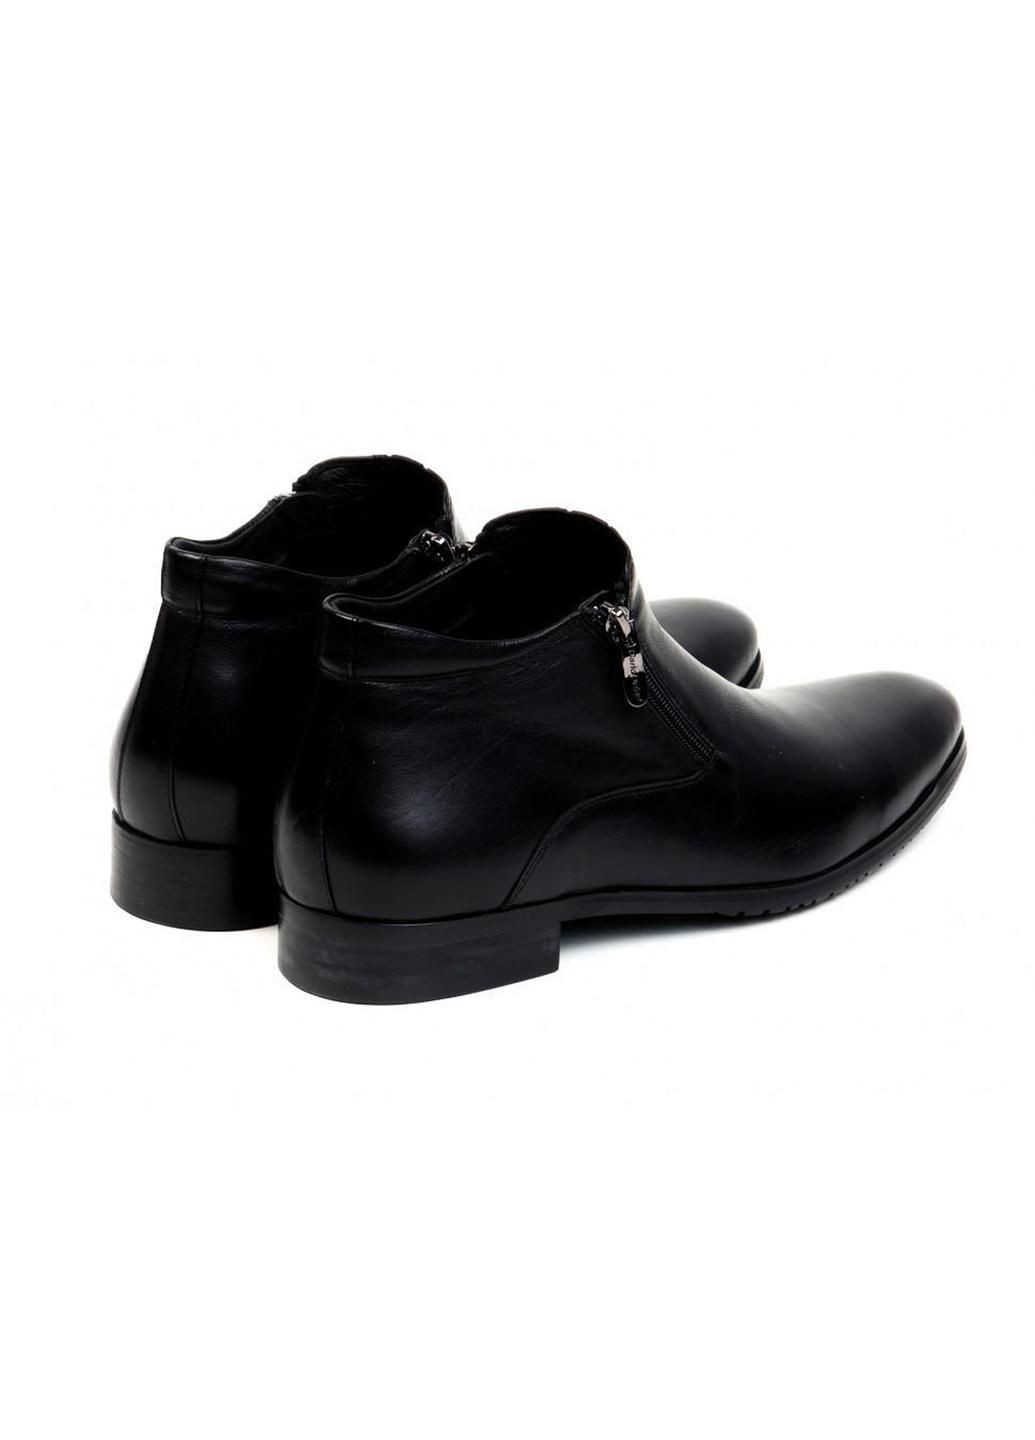 Черные зимние ботинки 7164050 цвет черный Carlo Delari